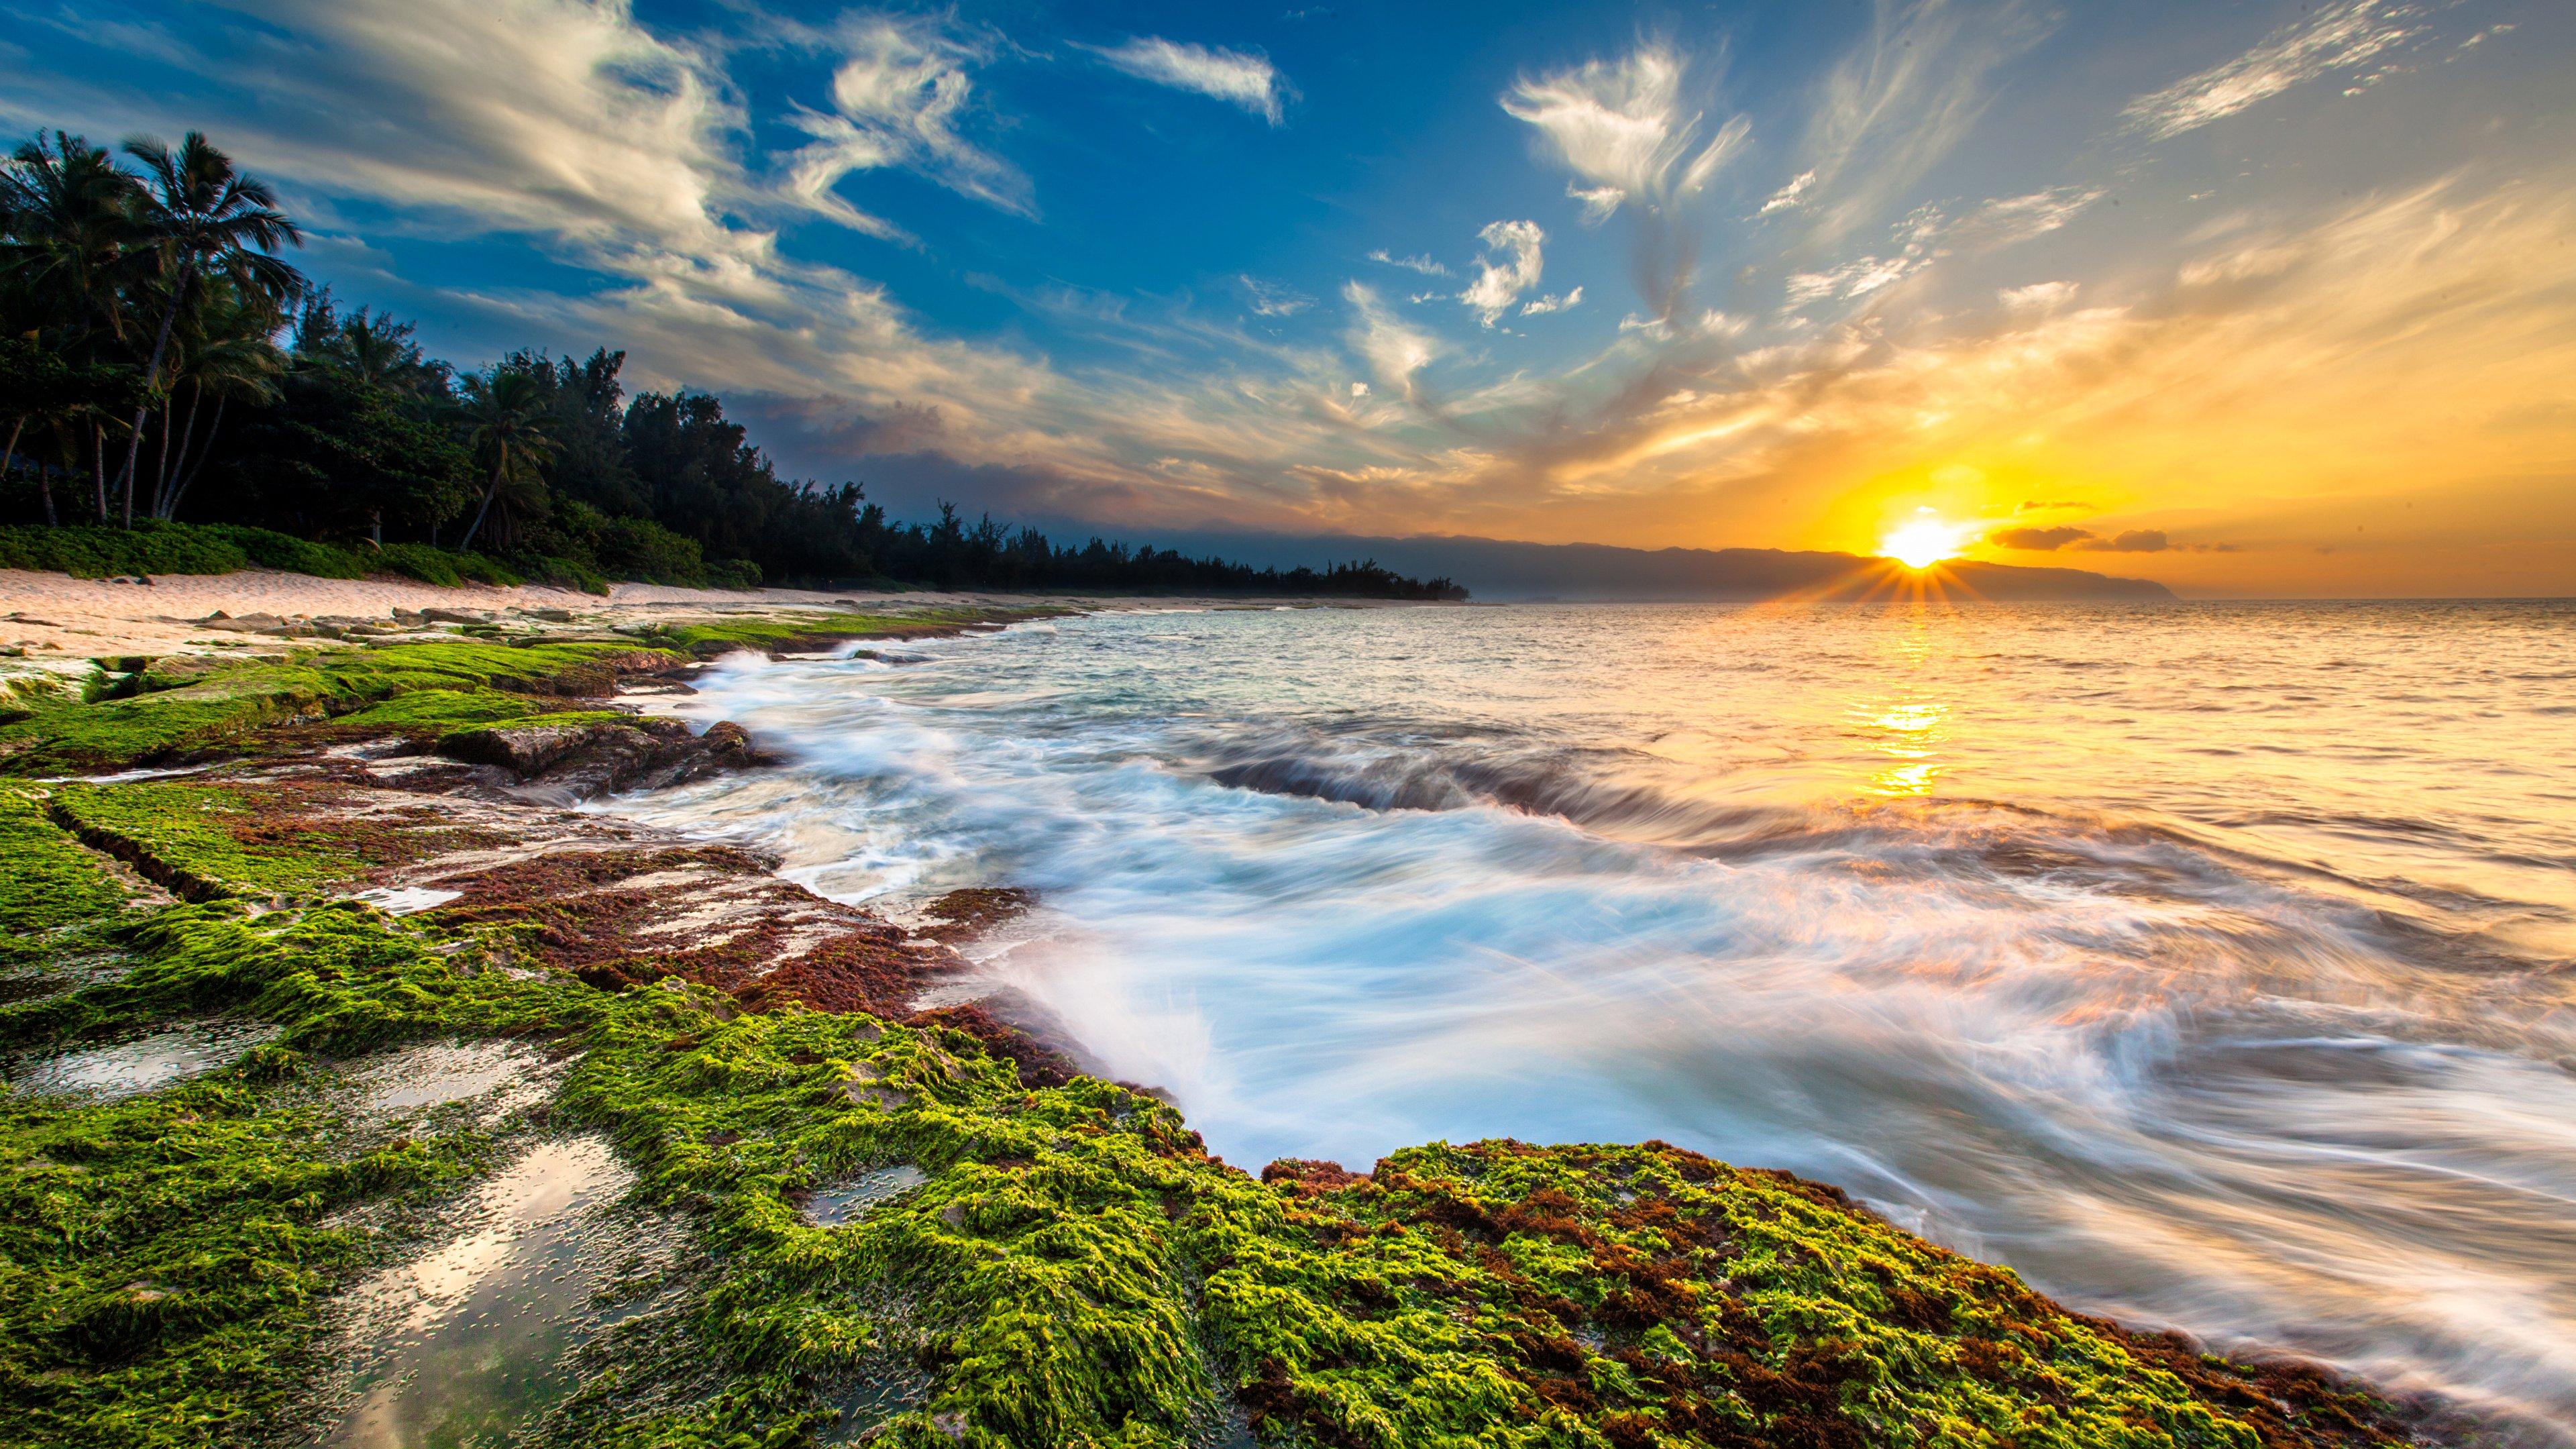 3840 x 2160 · jpeg - Hawaii Sunset Ocean Beach Waves Cl 4K wallpaper